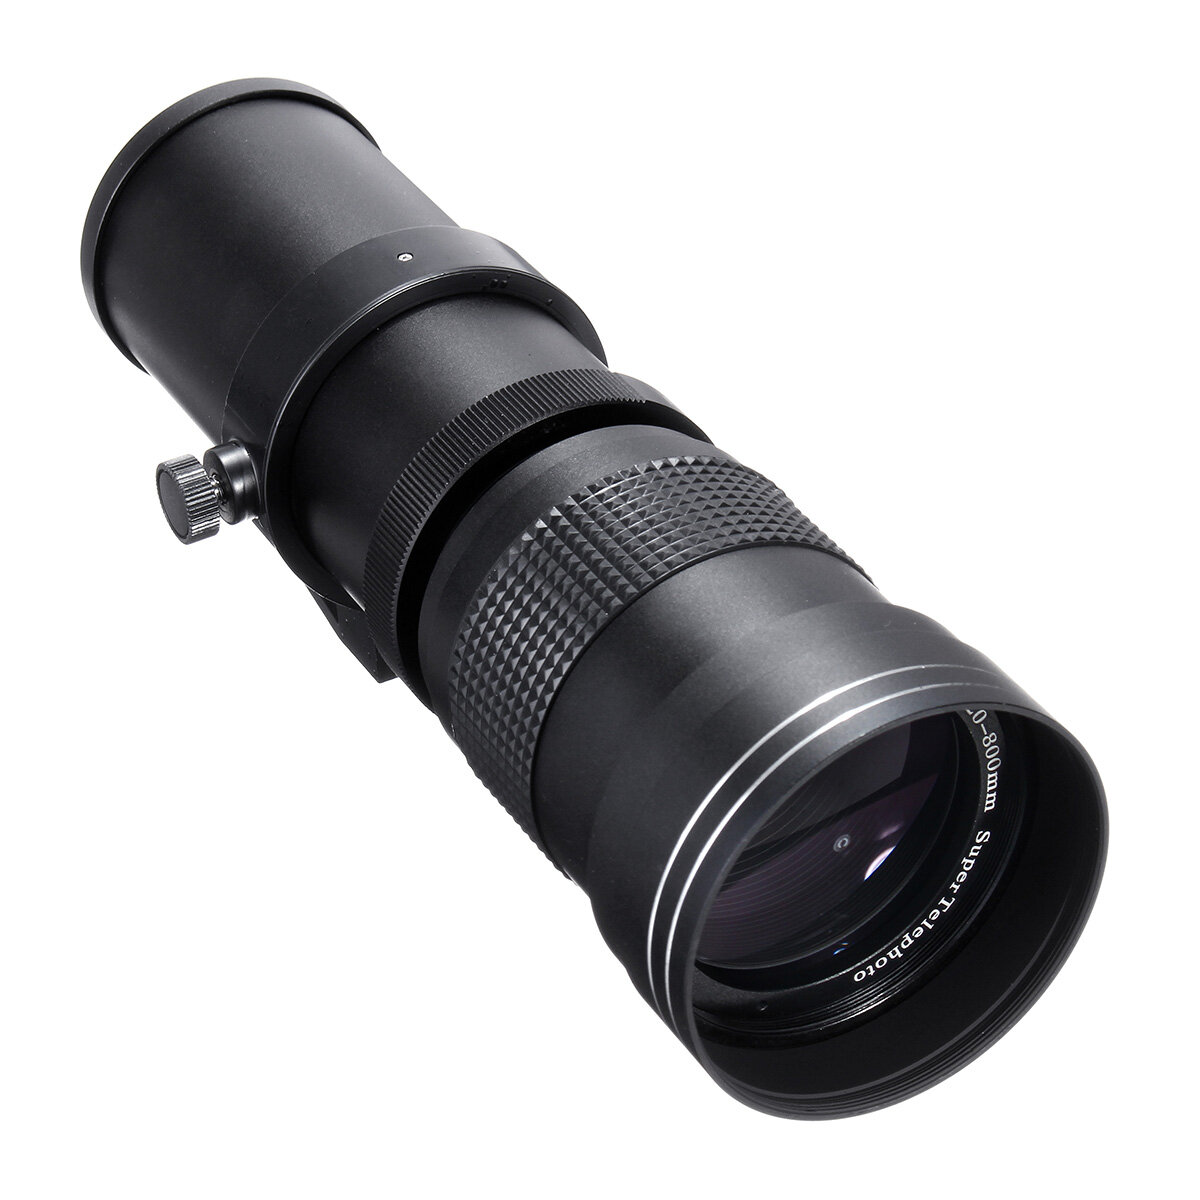 IPRee® 420-800mm F / 8.3-16 Super téléobjectif objectif zoom manuel + monture en T pour Nikon pour Sony pour appareil photo reflex Pentax